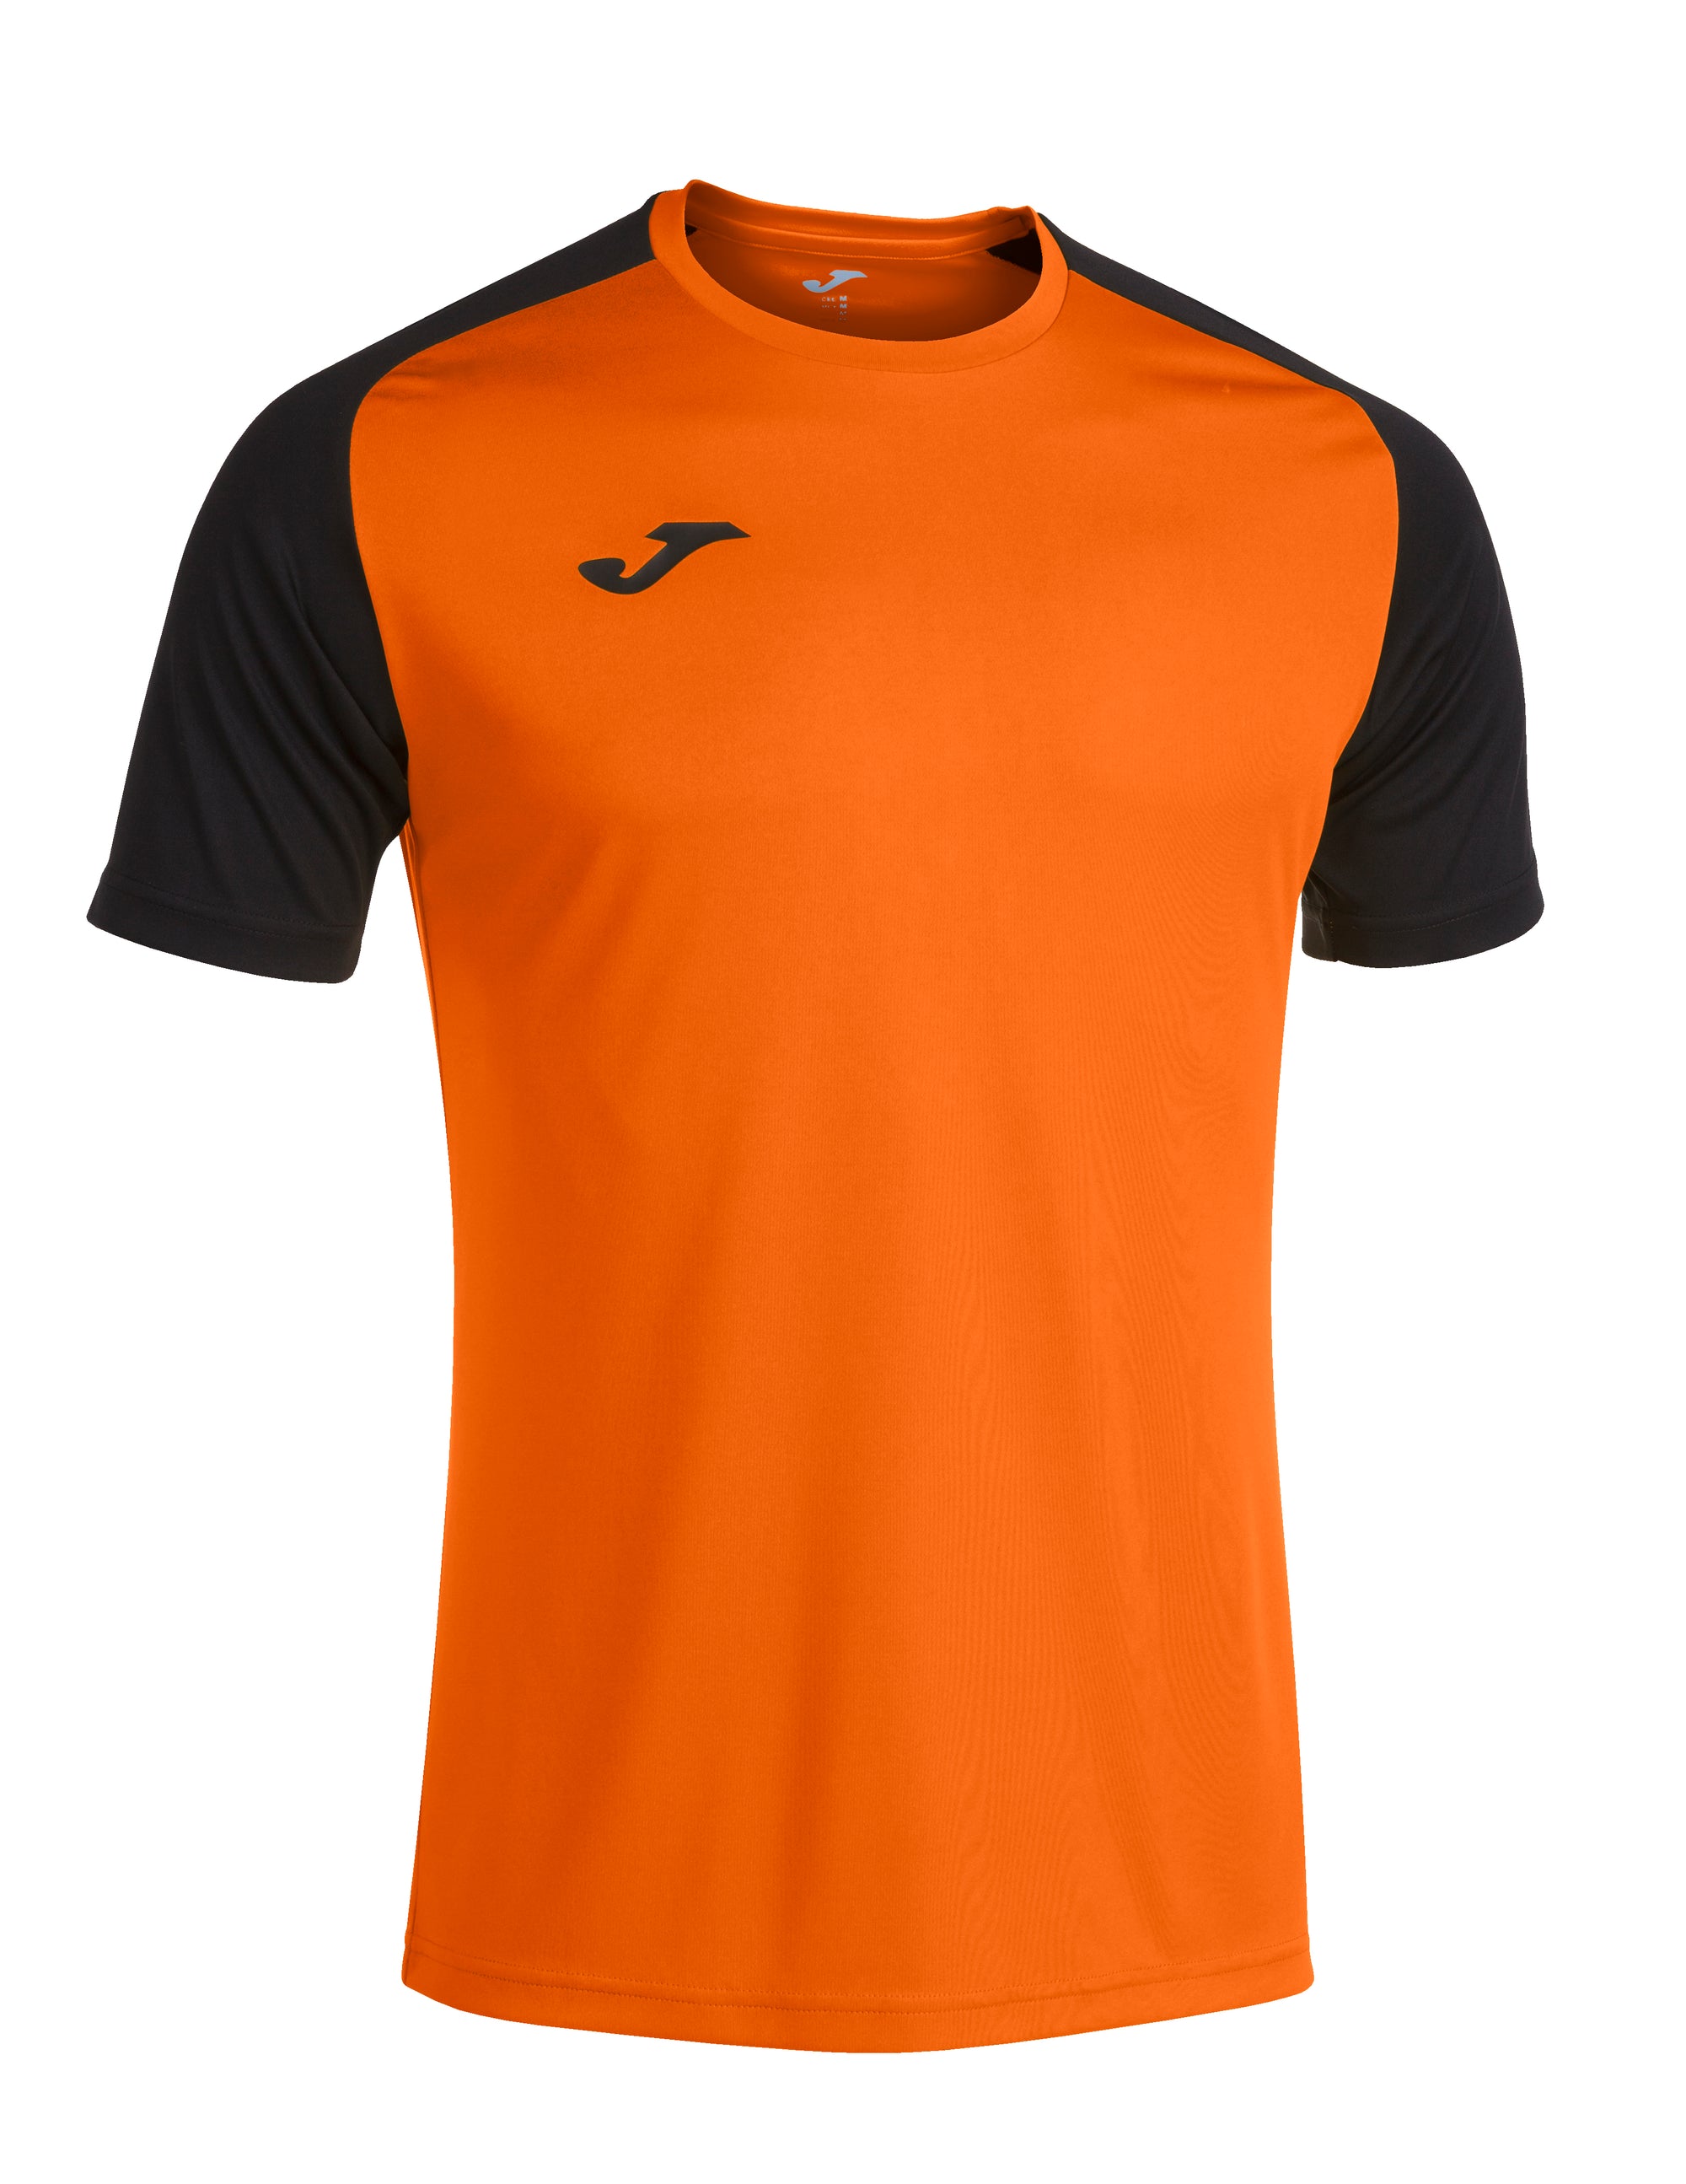 Joma Academy IV Short Sleeved T-Shirt - Orange/Black